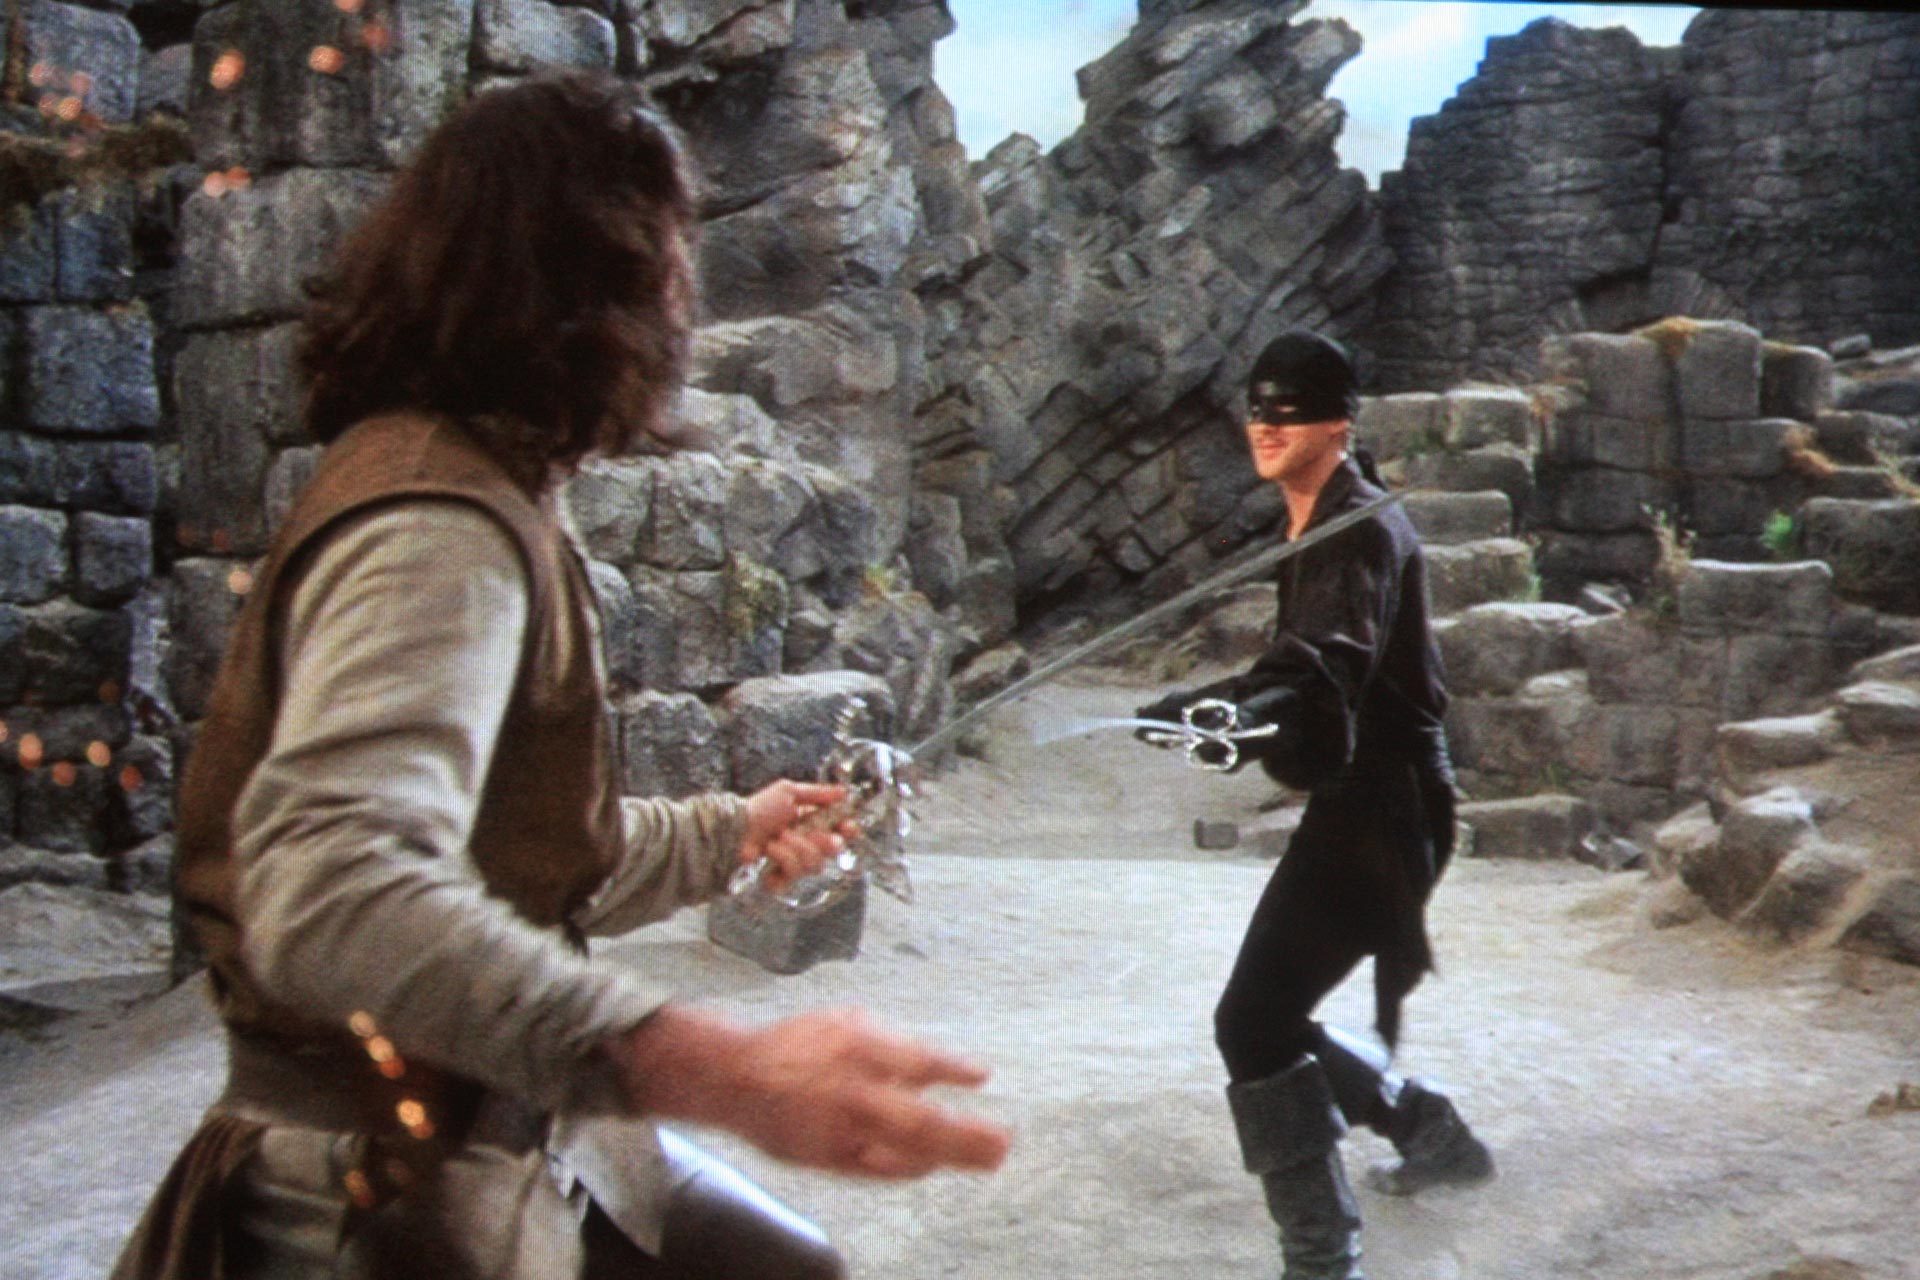 مندی پتینکین در فیلم عروس شاهزاده درحال شمشیربازی با شخصیت وستلی